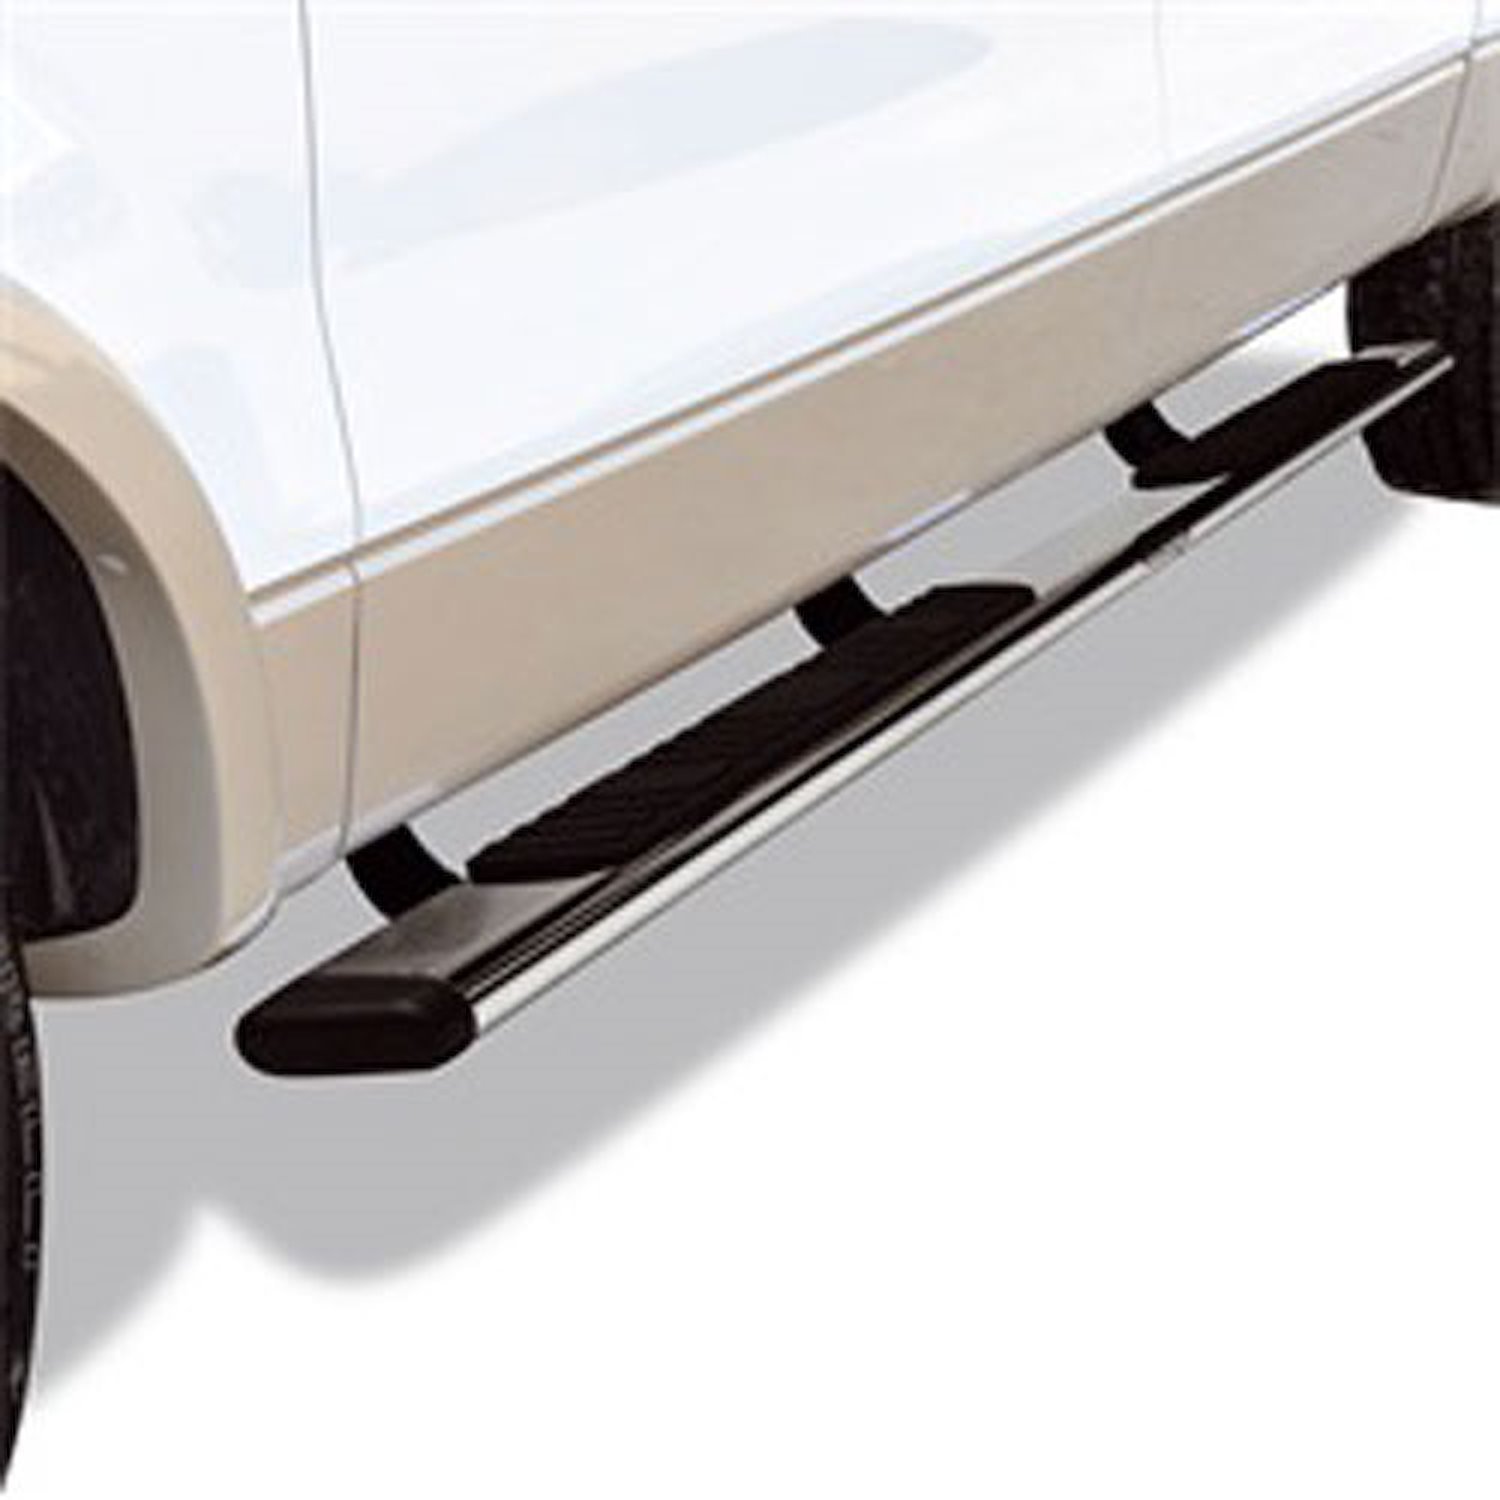 5" OE Xtreme Low Profile SideSteps Kit 2007-16 Chevy Silverado/GMC Sierra 1500/2500HD/3500HD